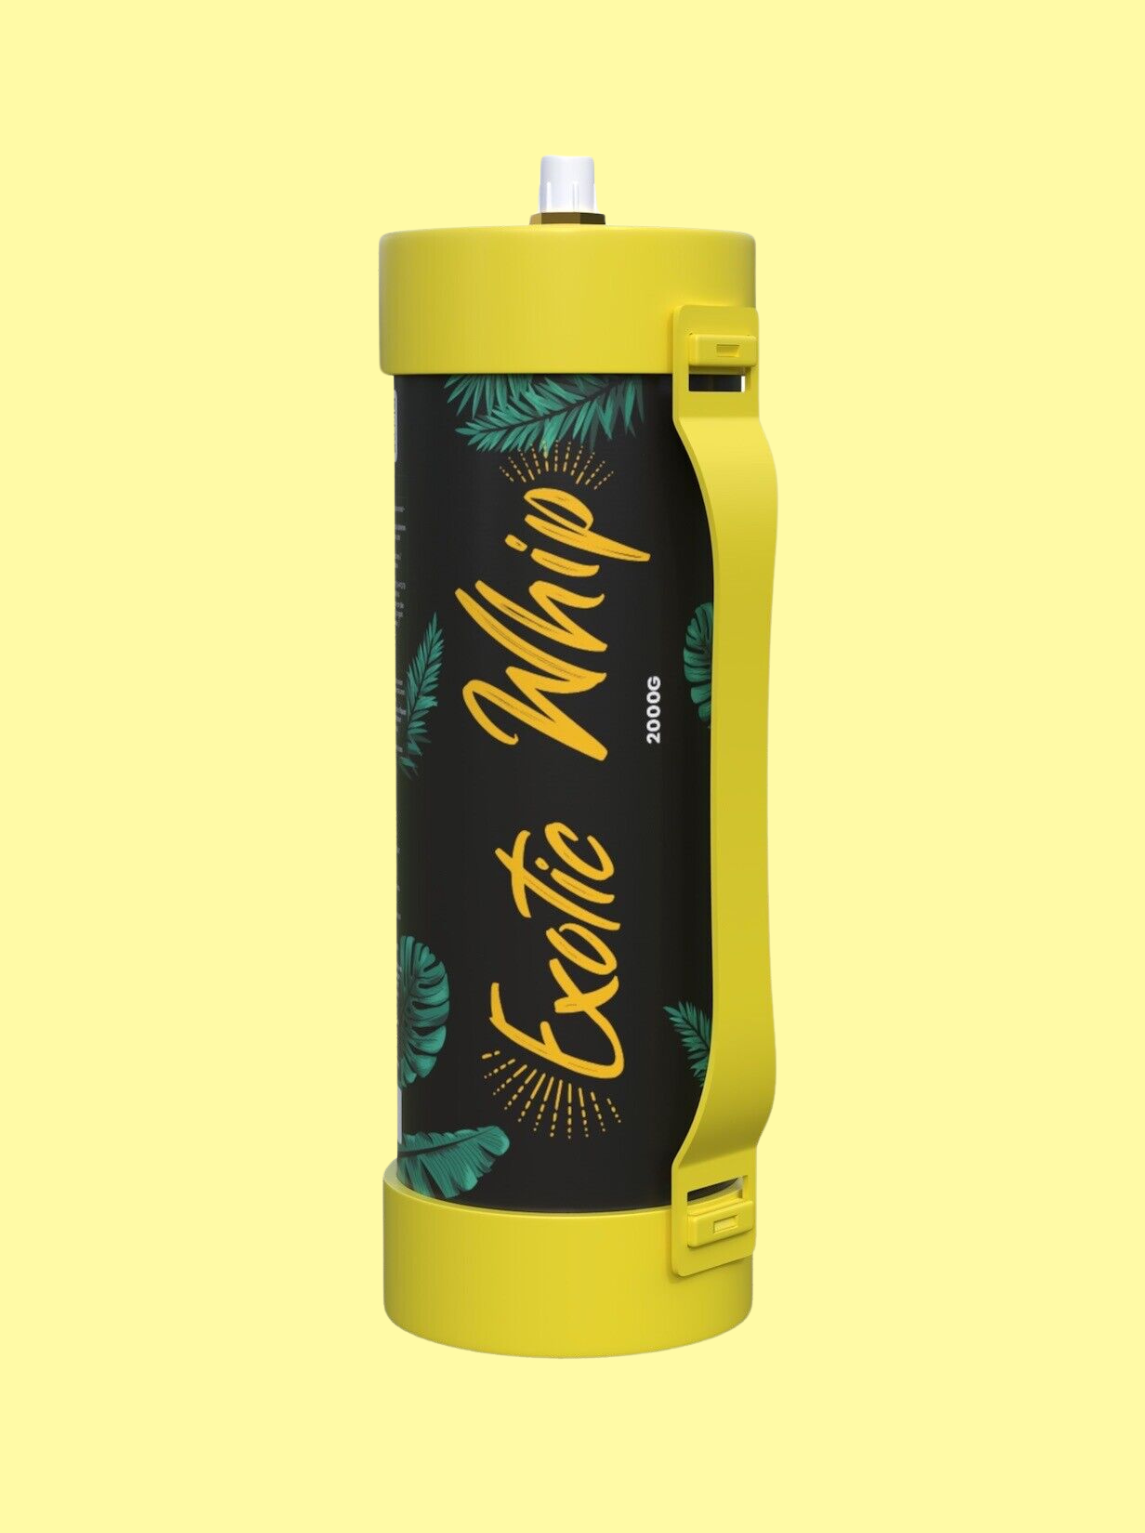 Die Gasflasche ist schwarz, mit dem gelben Logo "Exotic Whip" 2kg. Auf der Flasche sind grüne Blätter und ein gelbes Gummiband, dass oben und unten an der Flasche befestigt ist, welches zum Halten der Flasche dient. Der Hintergrund ist hellgelb.